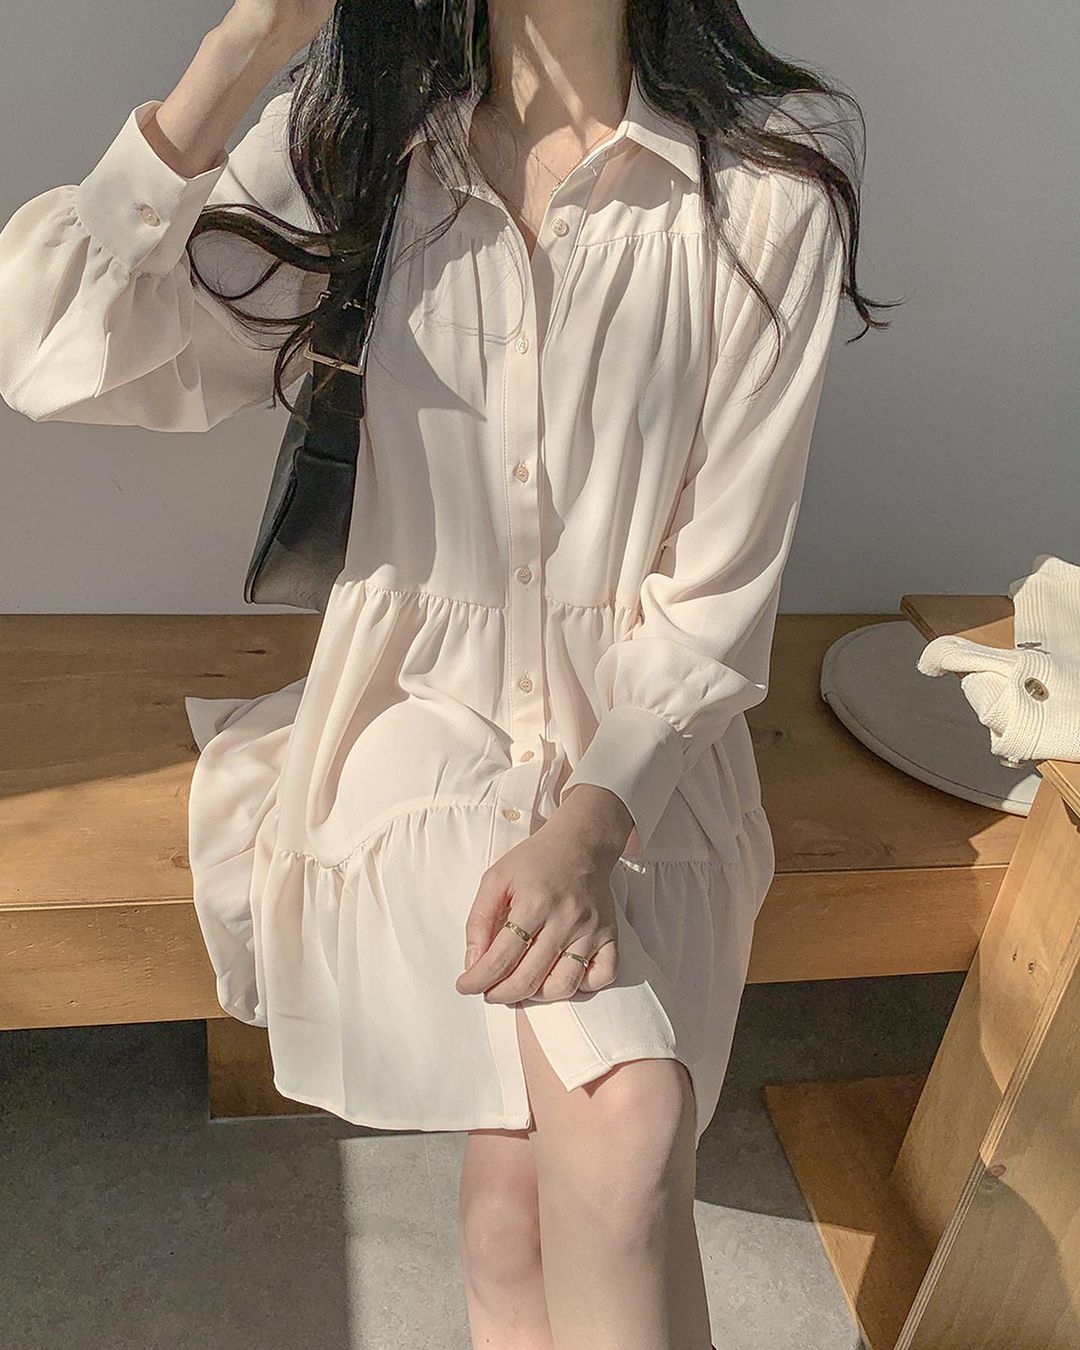 Hè đến là gái Hàn lại diện đủ kiểu váy trắng siêu trẻ xinh và tinh tế, xem mà muốn sắm cả 'lố' về nhà - Ảnh 7